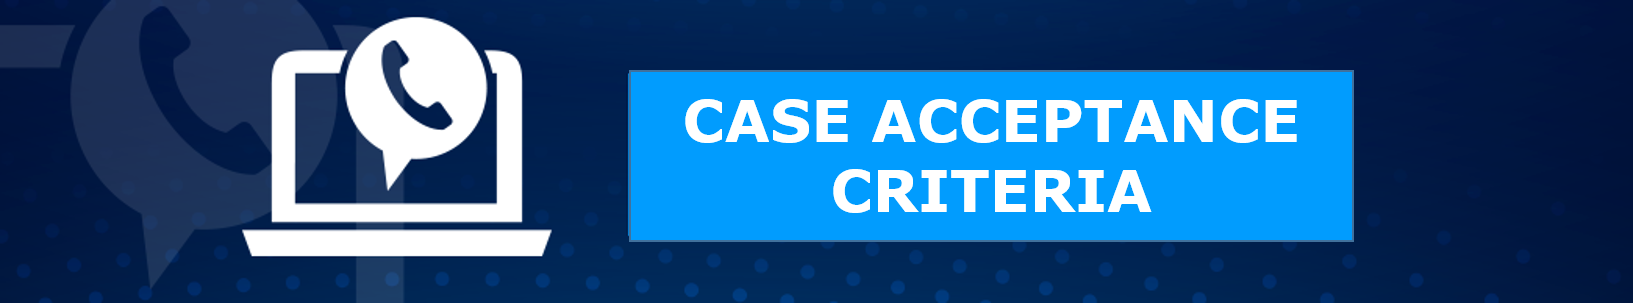 Case Acceptance Criteria